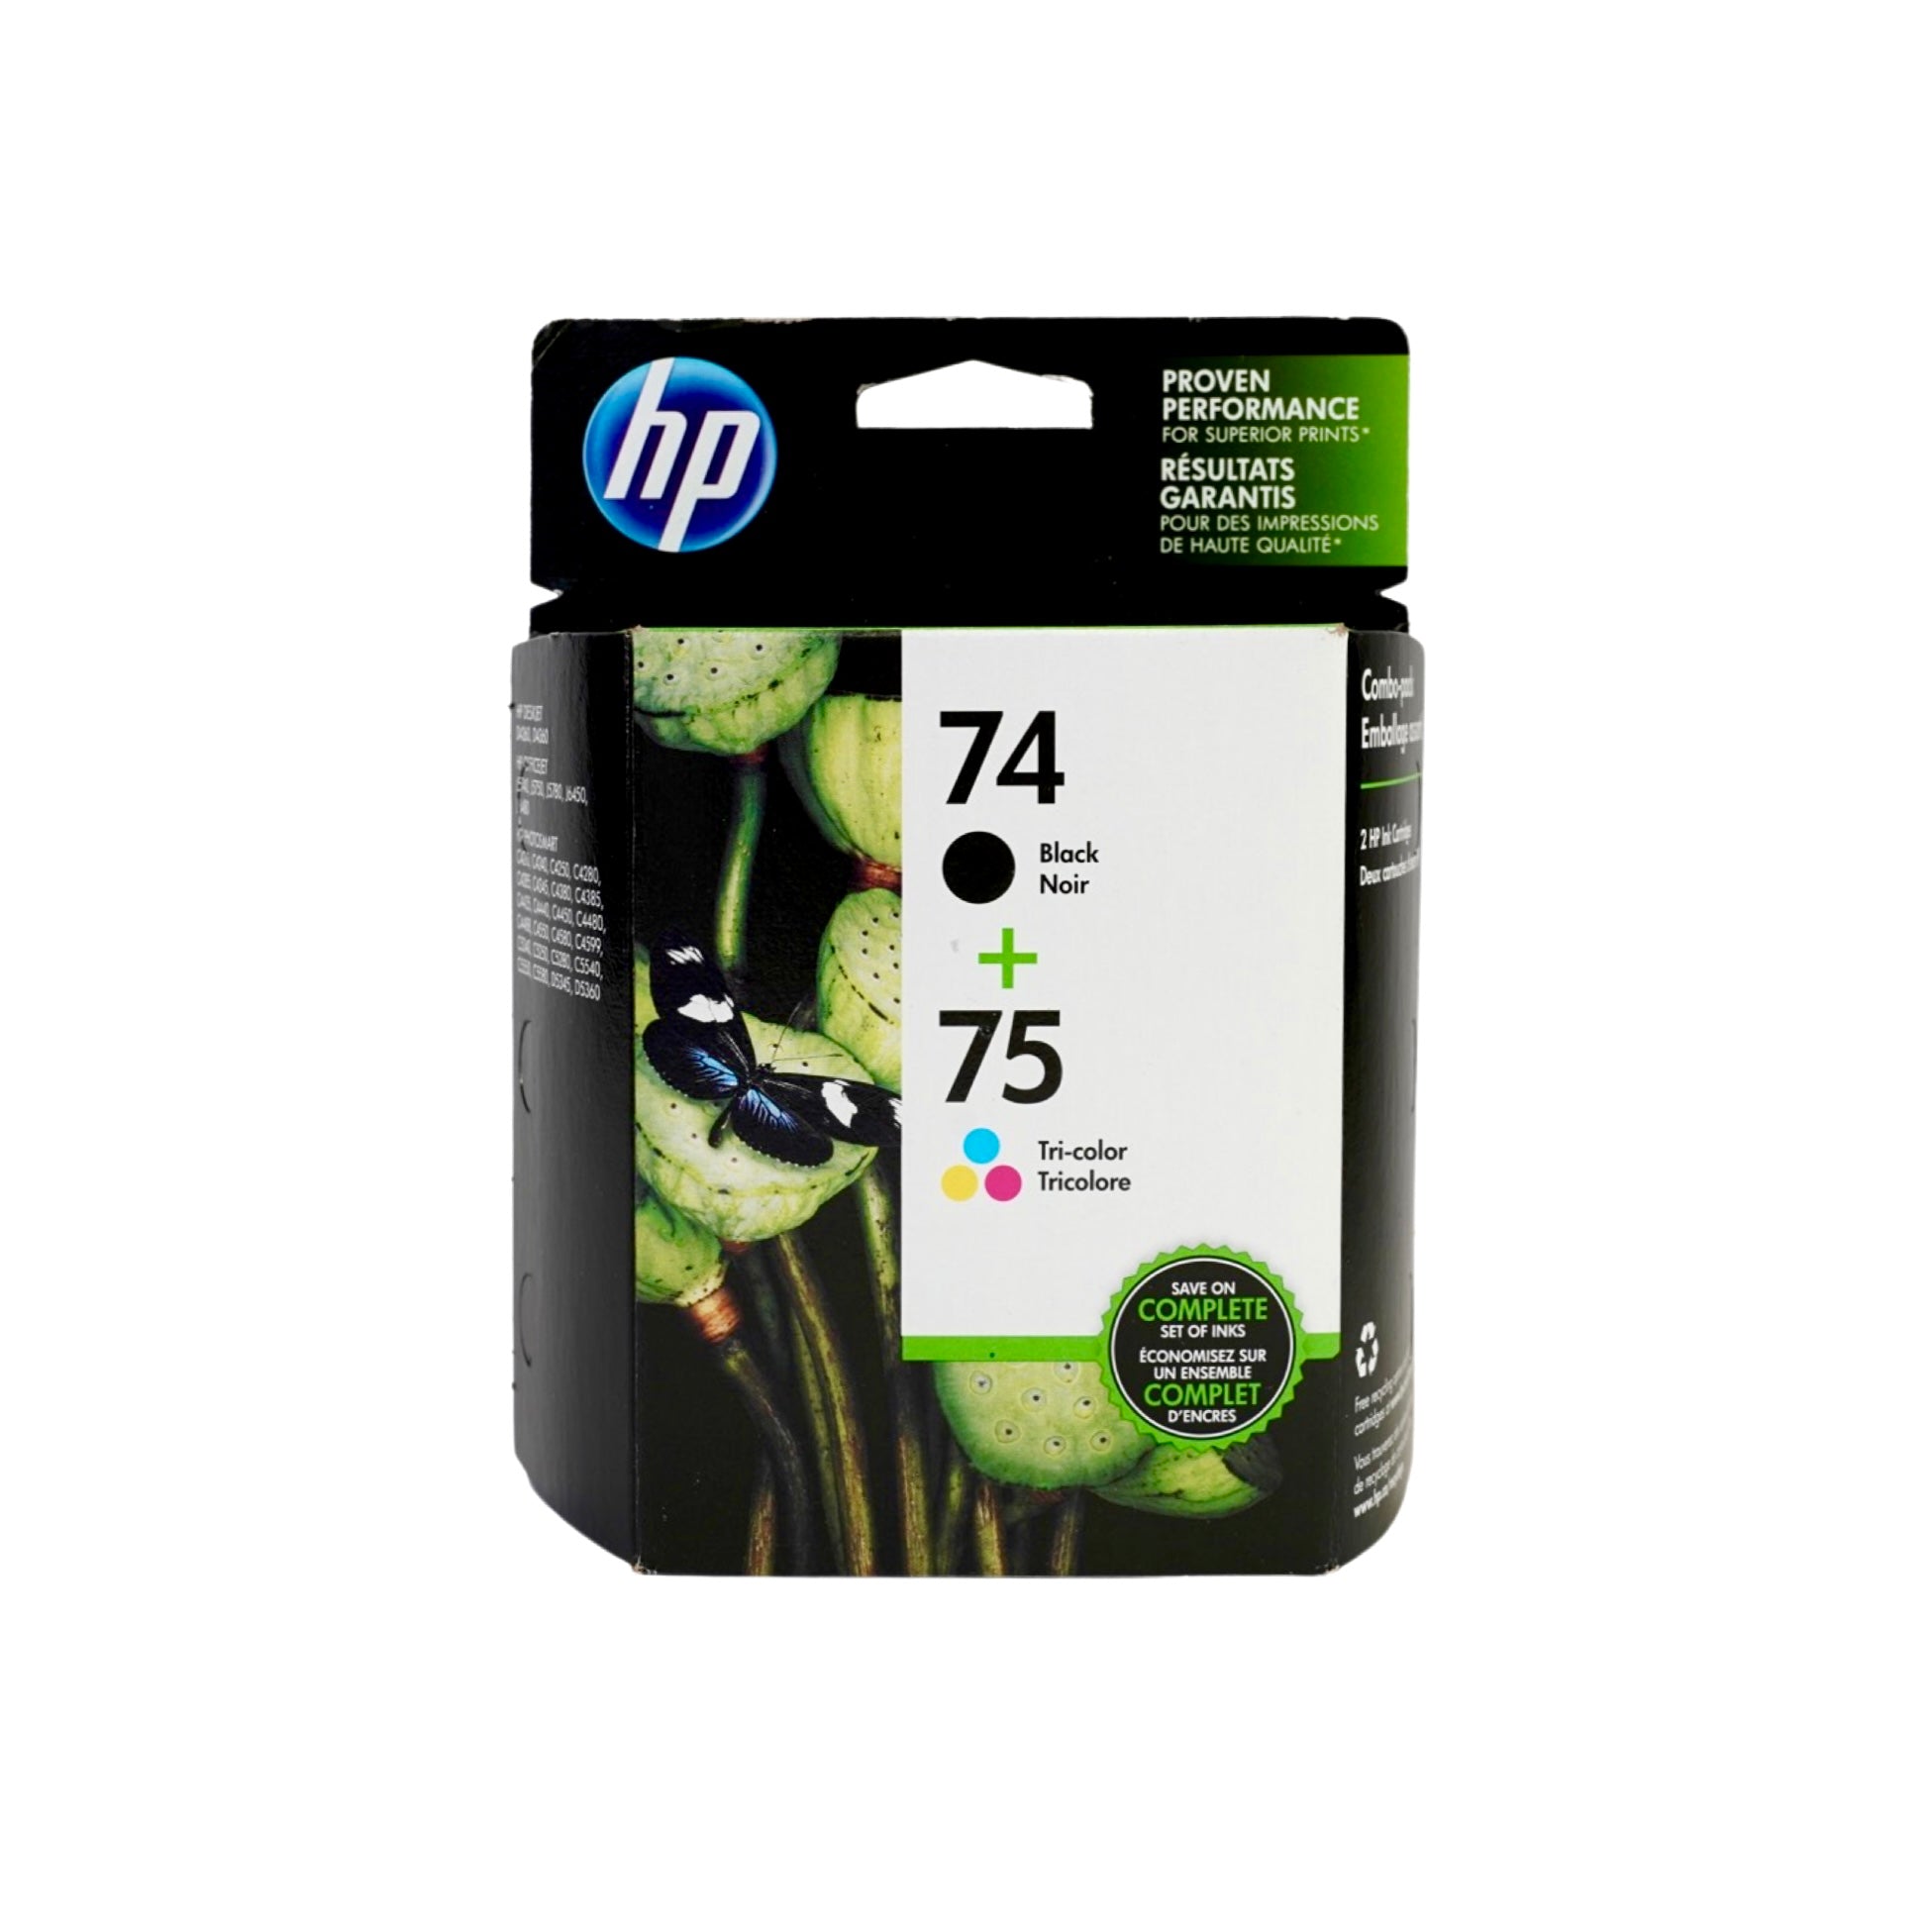 Genuine HP 74/Genuine HP 75 Black/Color Ink Cartridges, Standard Yield, 2/Pack (CC659FN